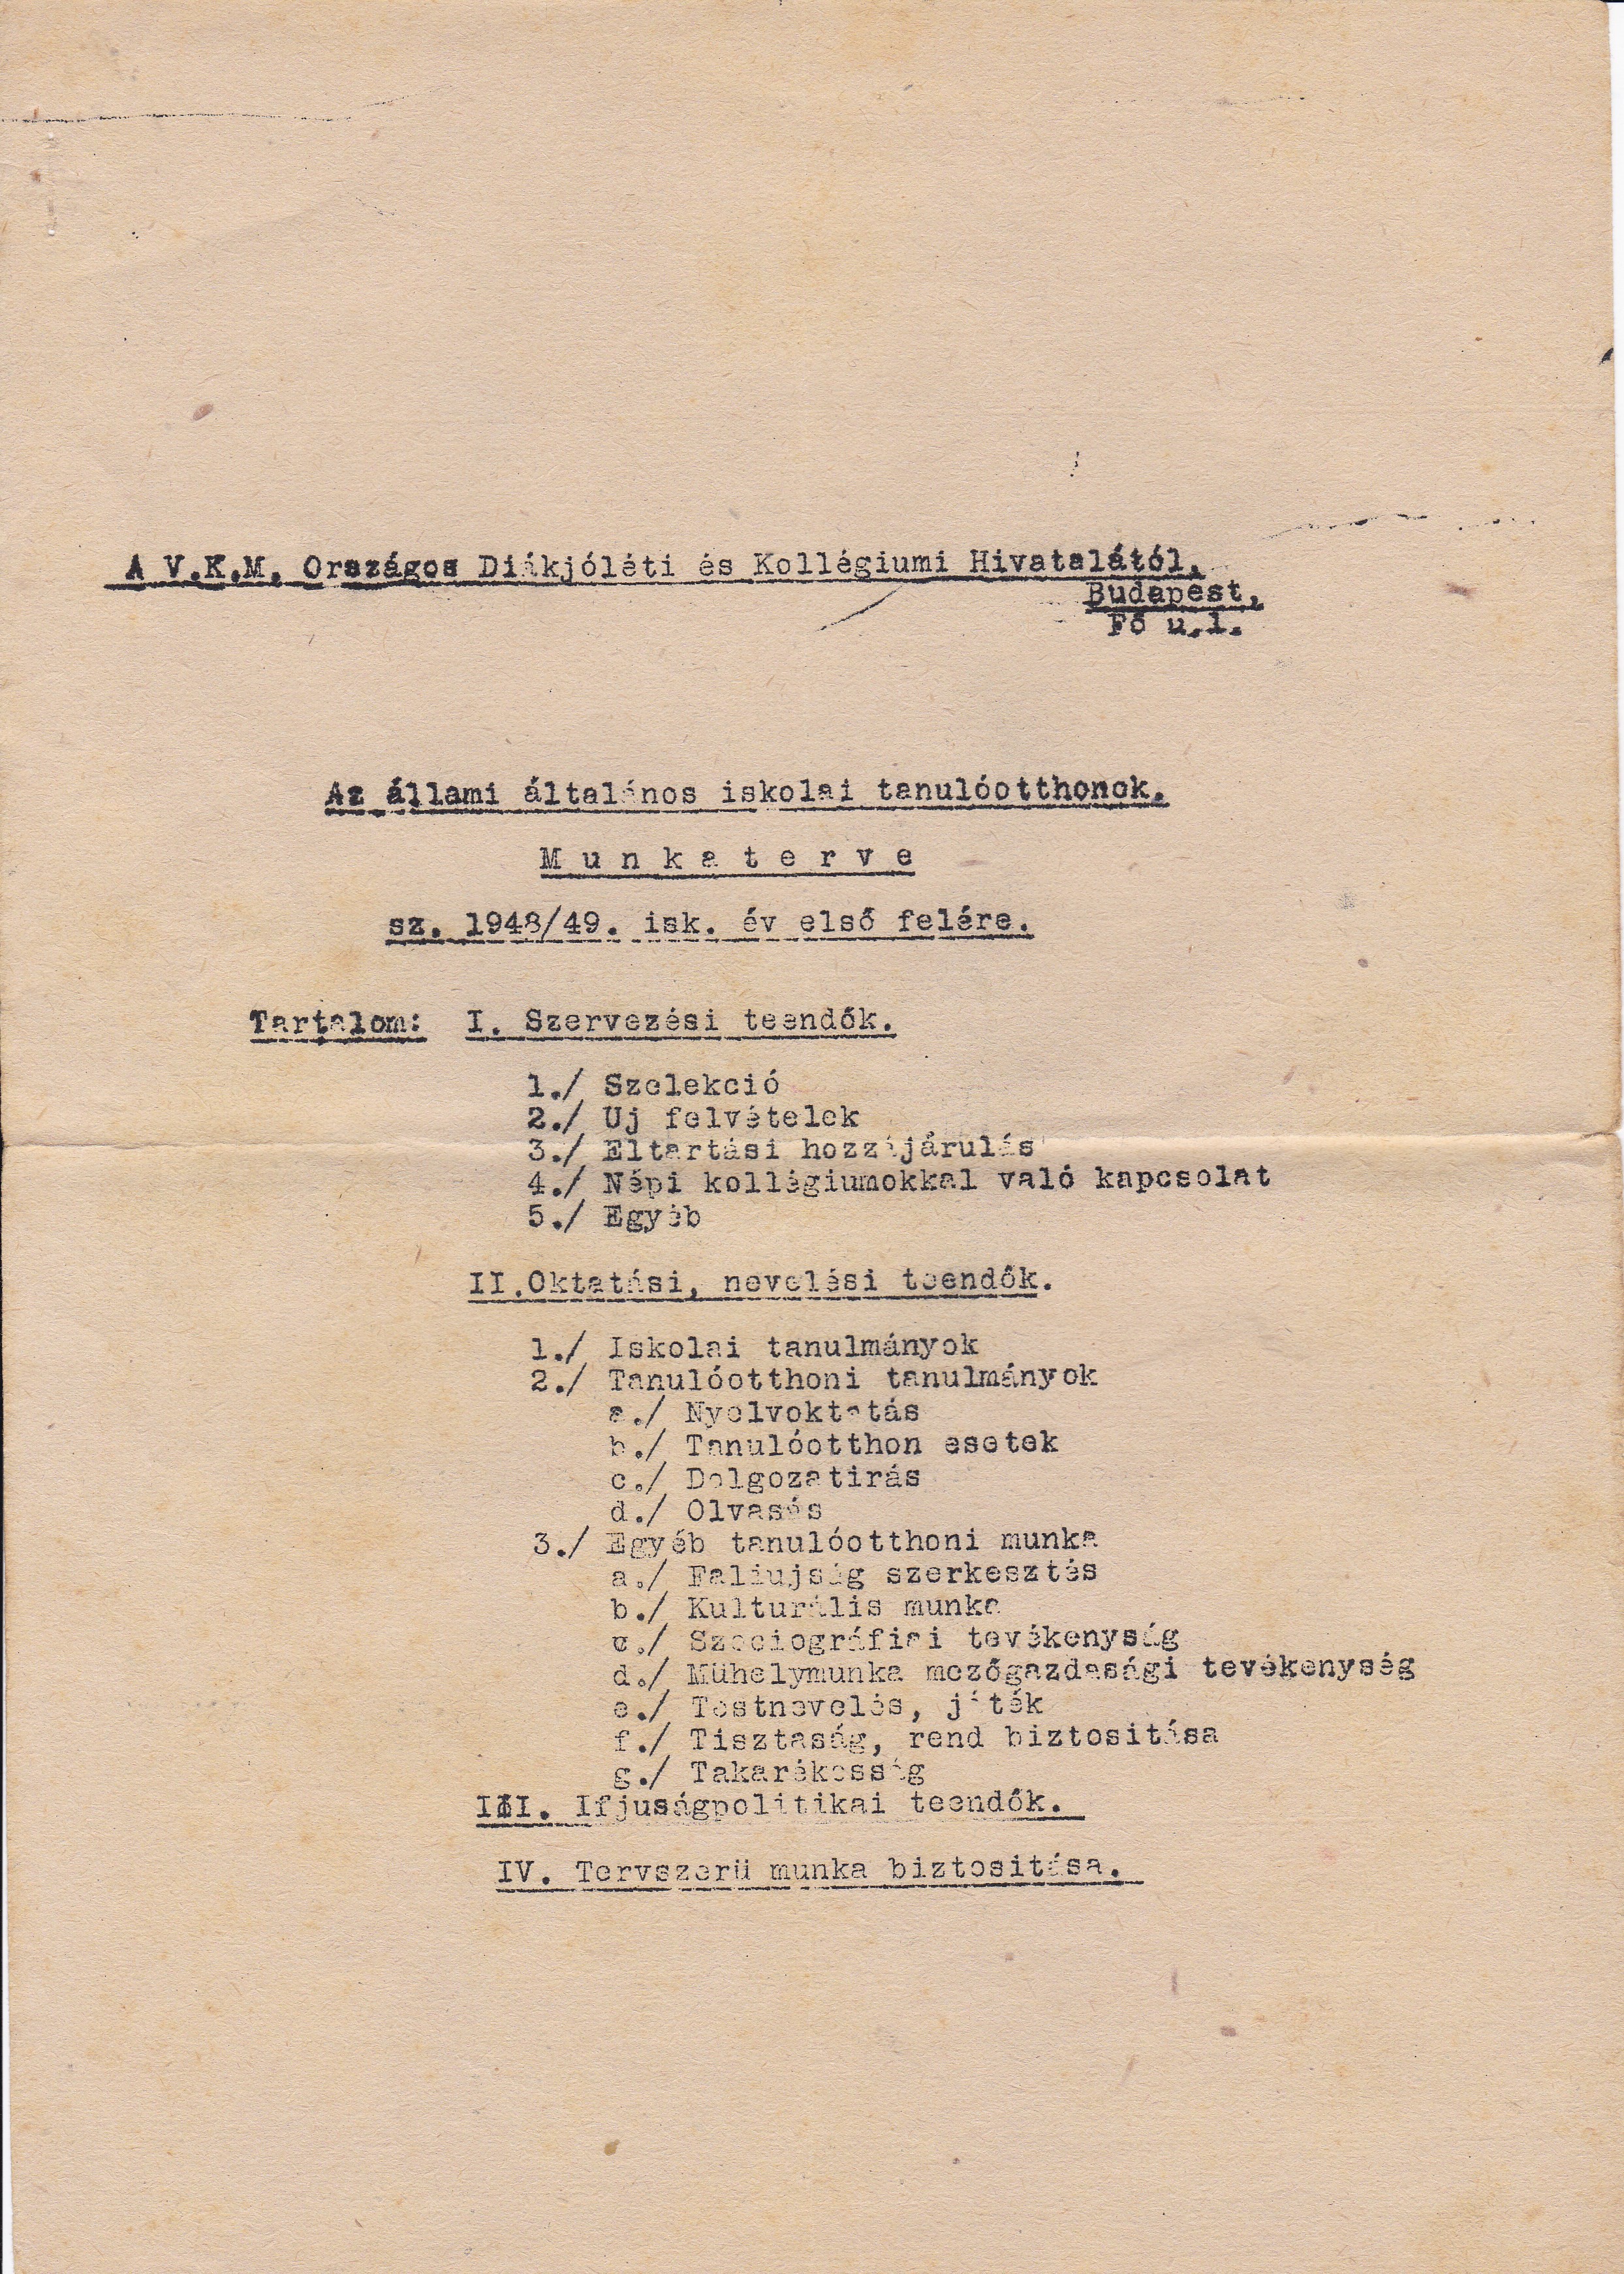 Munkaterv az állami általános iskolai tanulóotthonok számára 1948/49 első félév (Tapolcai Városi Múzeum CC BY-NC-SA)